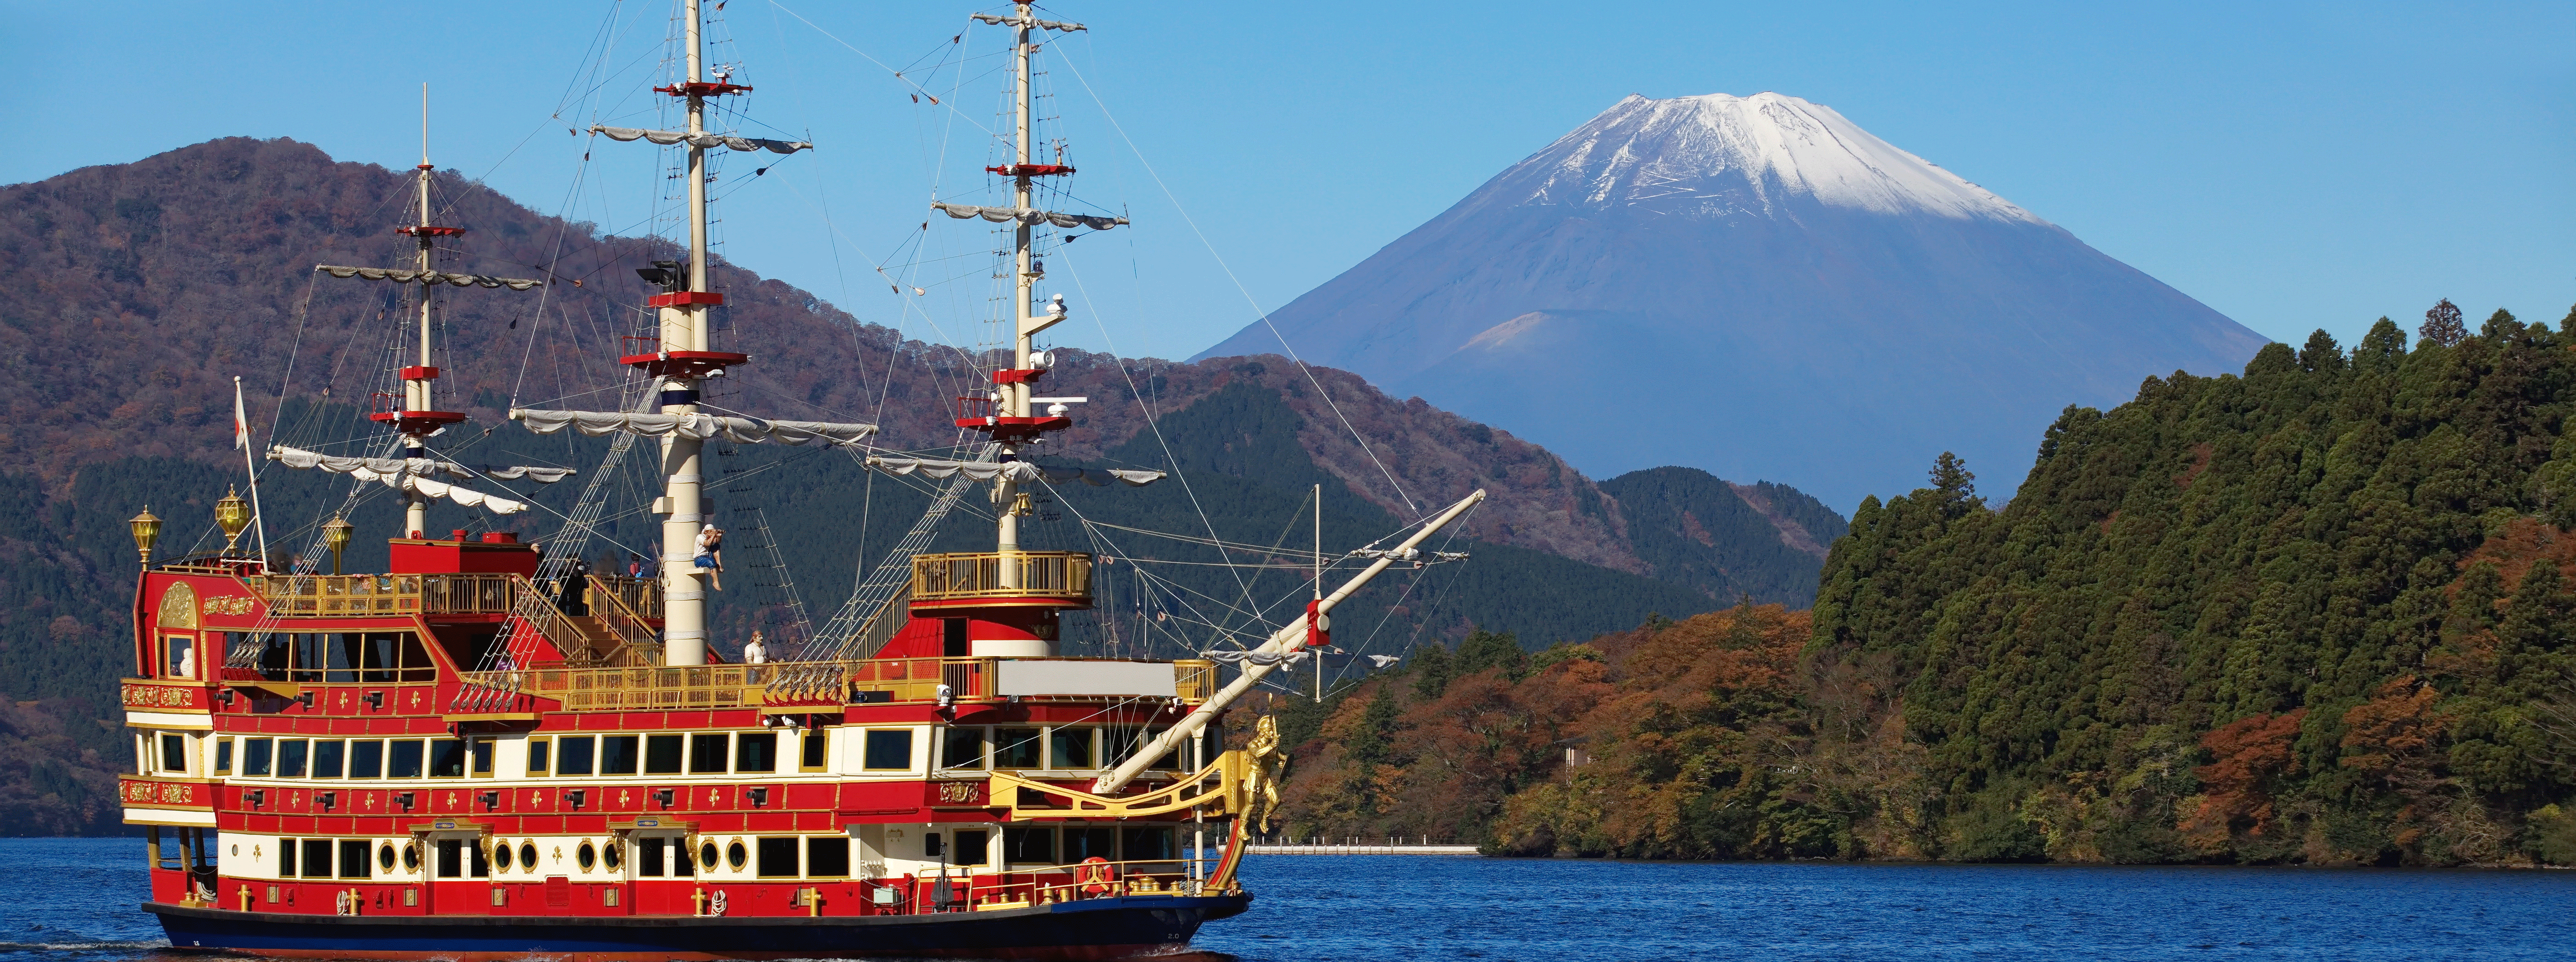 /resource/Images/hongkong/headerimage/lake-Ashi-and-Mountain-Fuji-.png